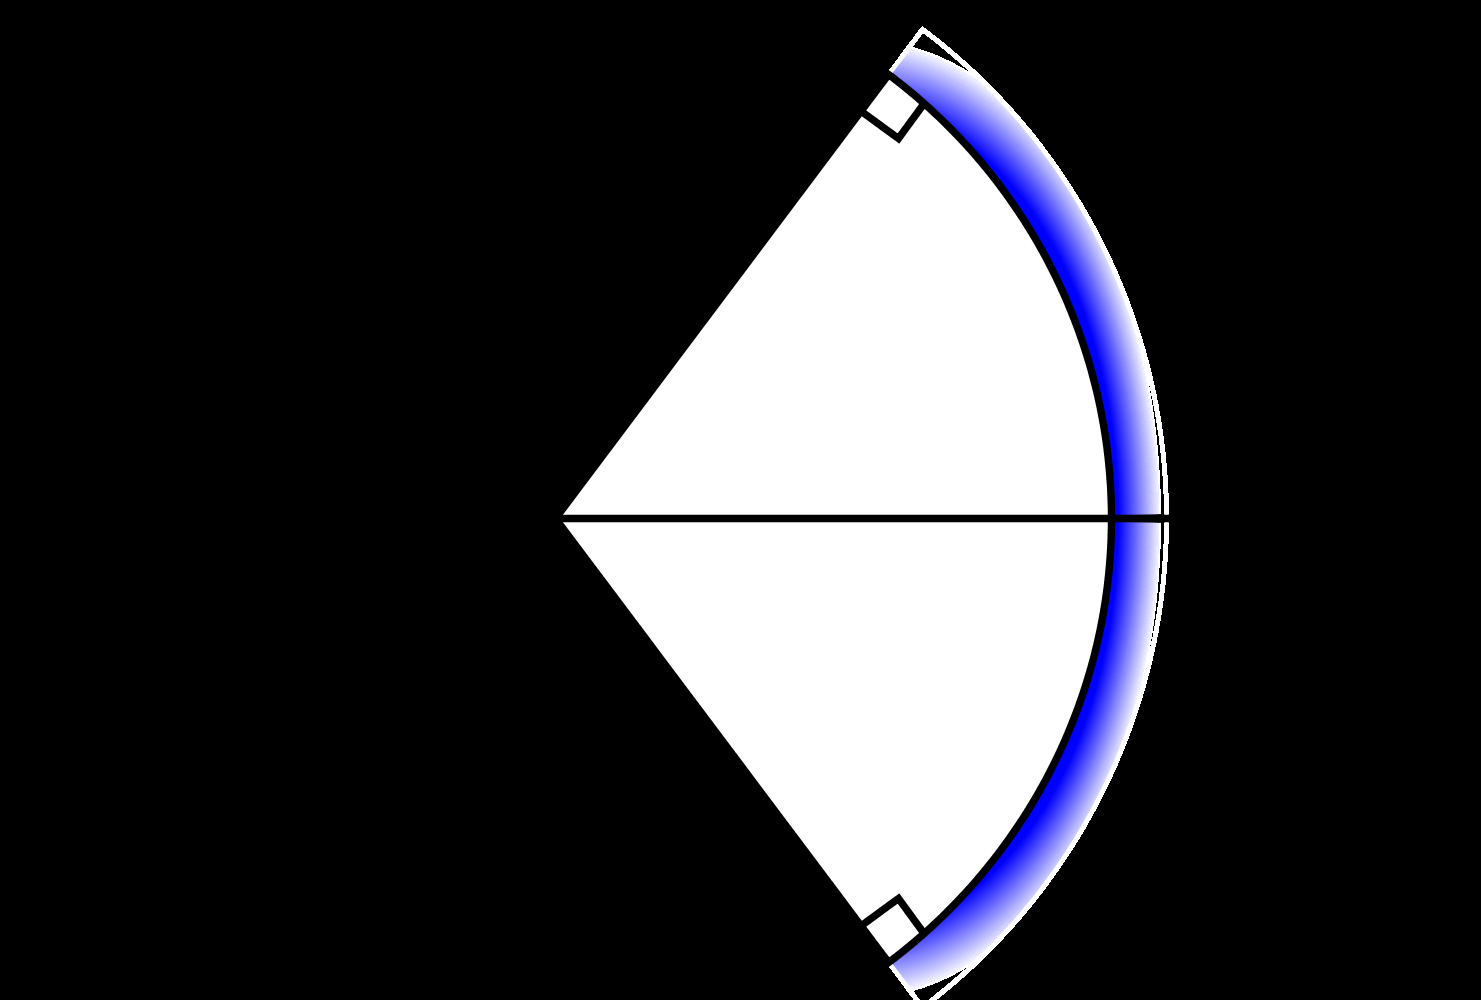 Problem 3. Figuren nedan visar en ljusstråle som infaller på en konkav sfärisk spegel. Den sfäriska ytan har sitt centrum på den optiska axeln.